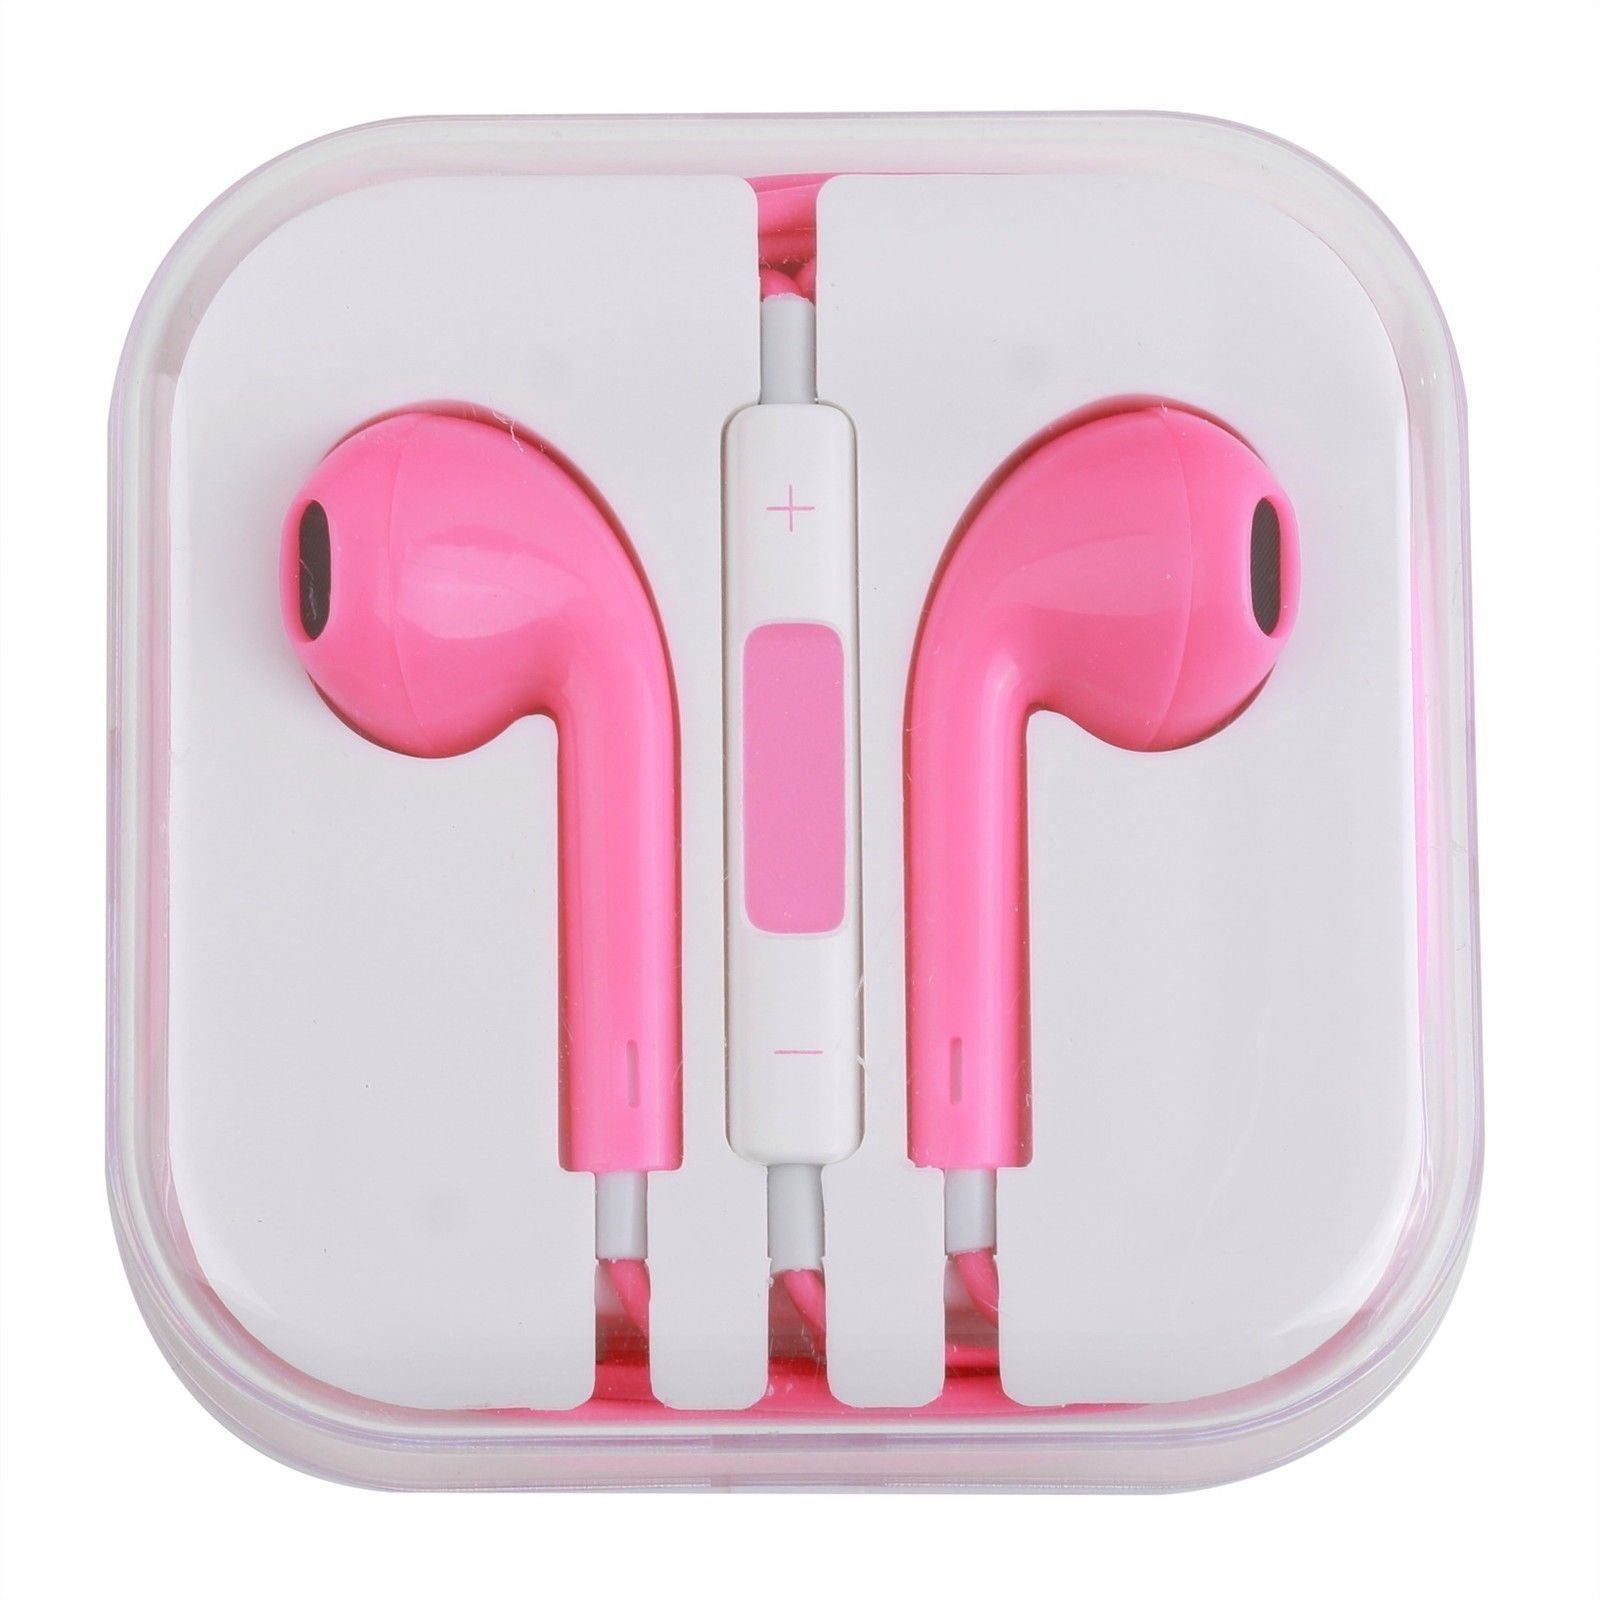 CyberTech Hot Pink Earphones w/ Volume Control + Clear Hard Case